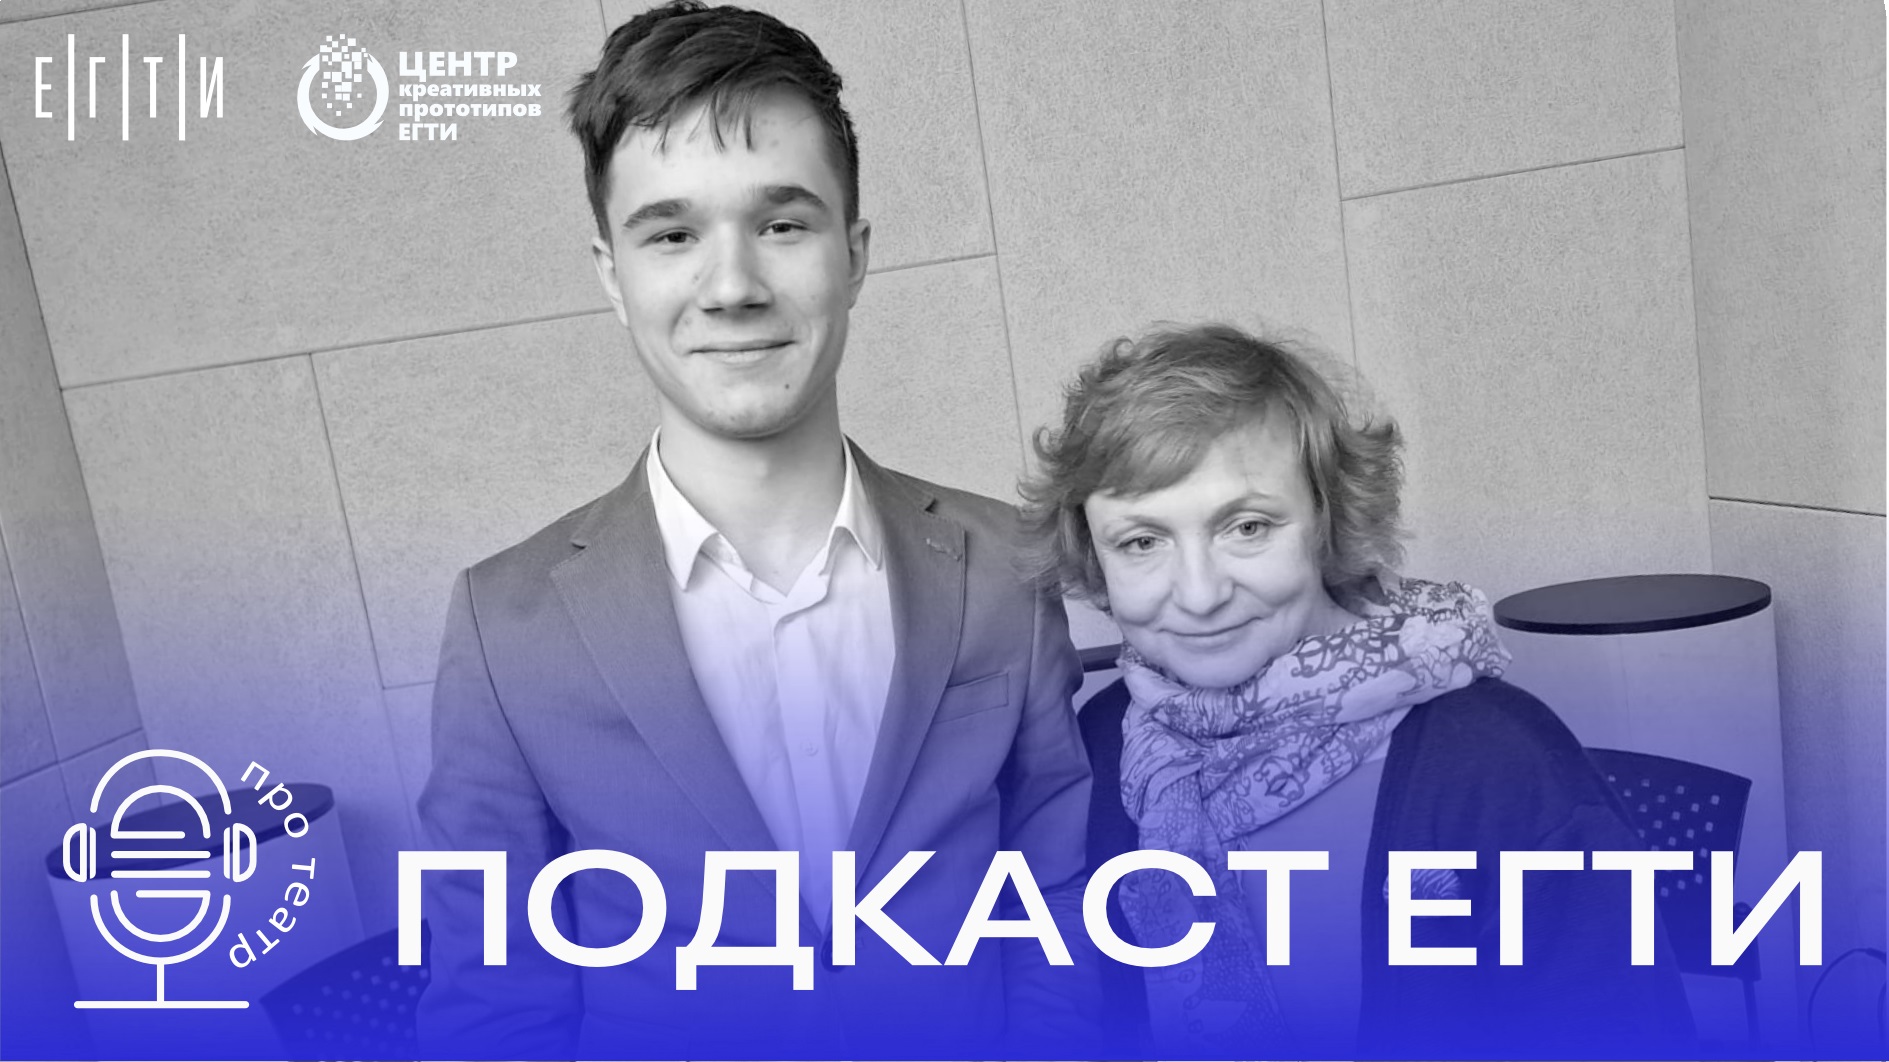 Студенческий подкаст ЕГТИ "Про театр": Разговор с Мариной Райкиной